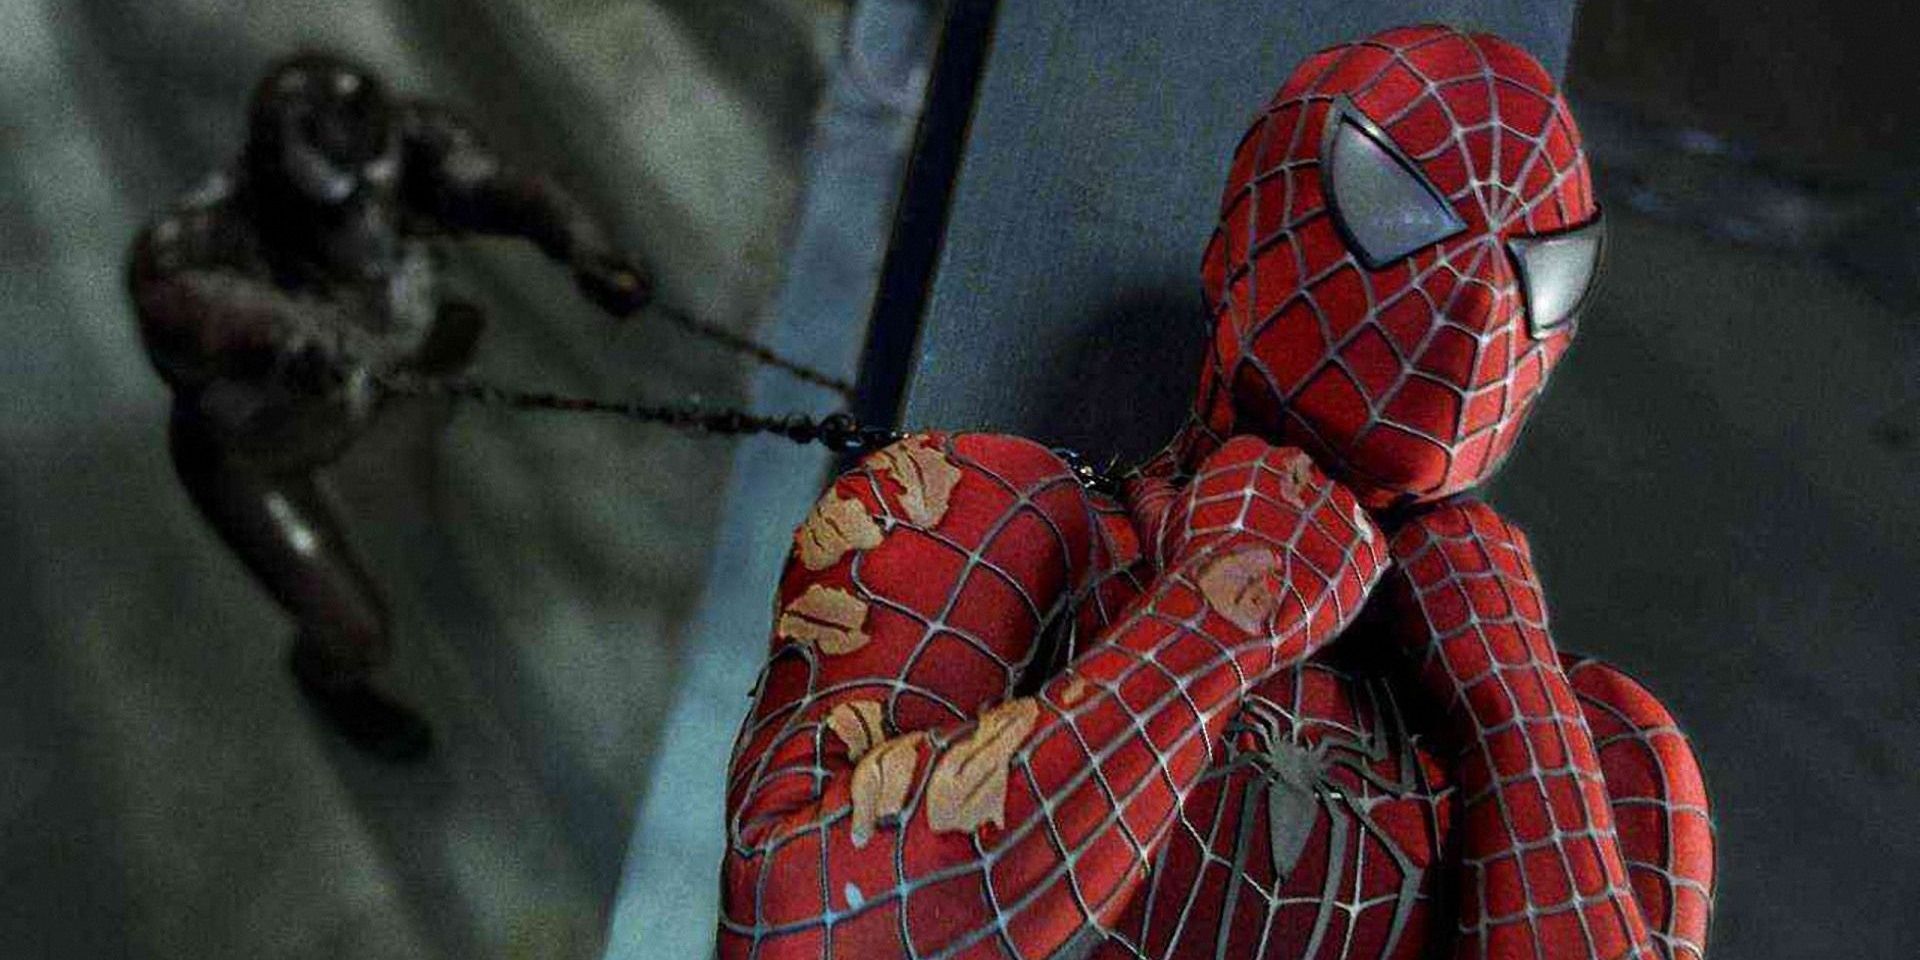 Spidey being strangled by Venom in Spider-Man 3